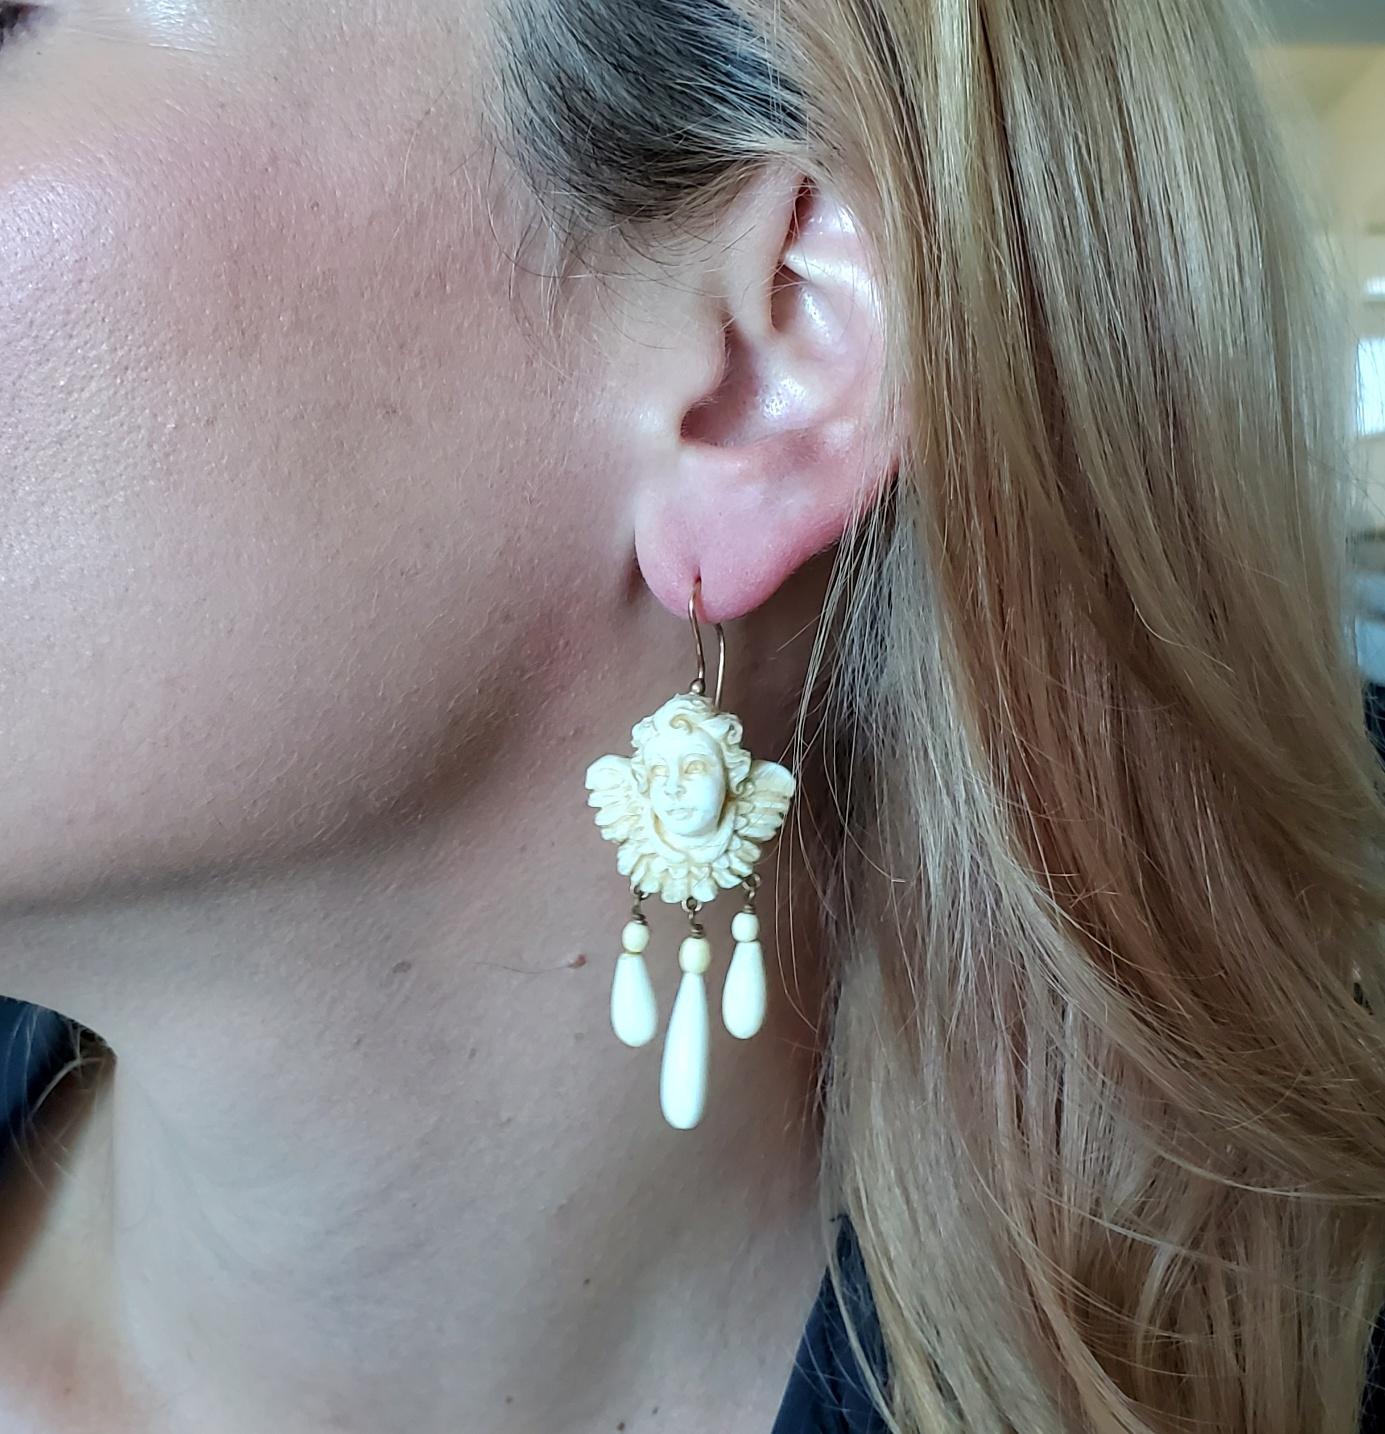 Französische antike Ohrringe mit geschnitzten Cherubinen.

Wunderschönes Paar antiker Ohrringe, die während der georgianischen Periode in Paris, Frankreich, entstanden sind (ca. 1820). An den Ohrringen hängen zwei prächtige weiße